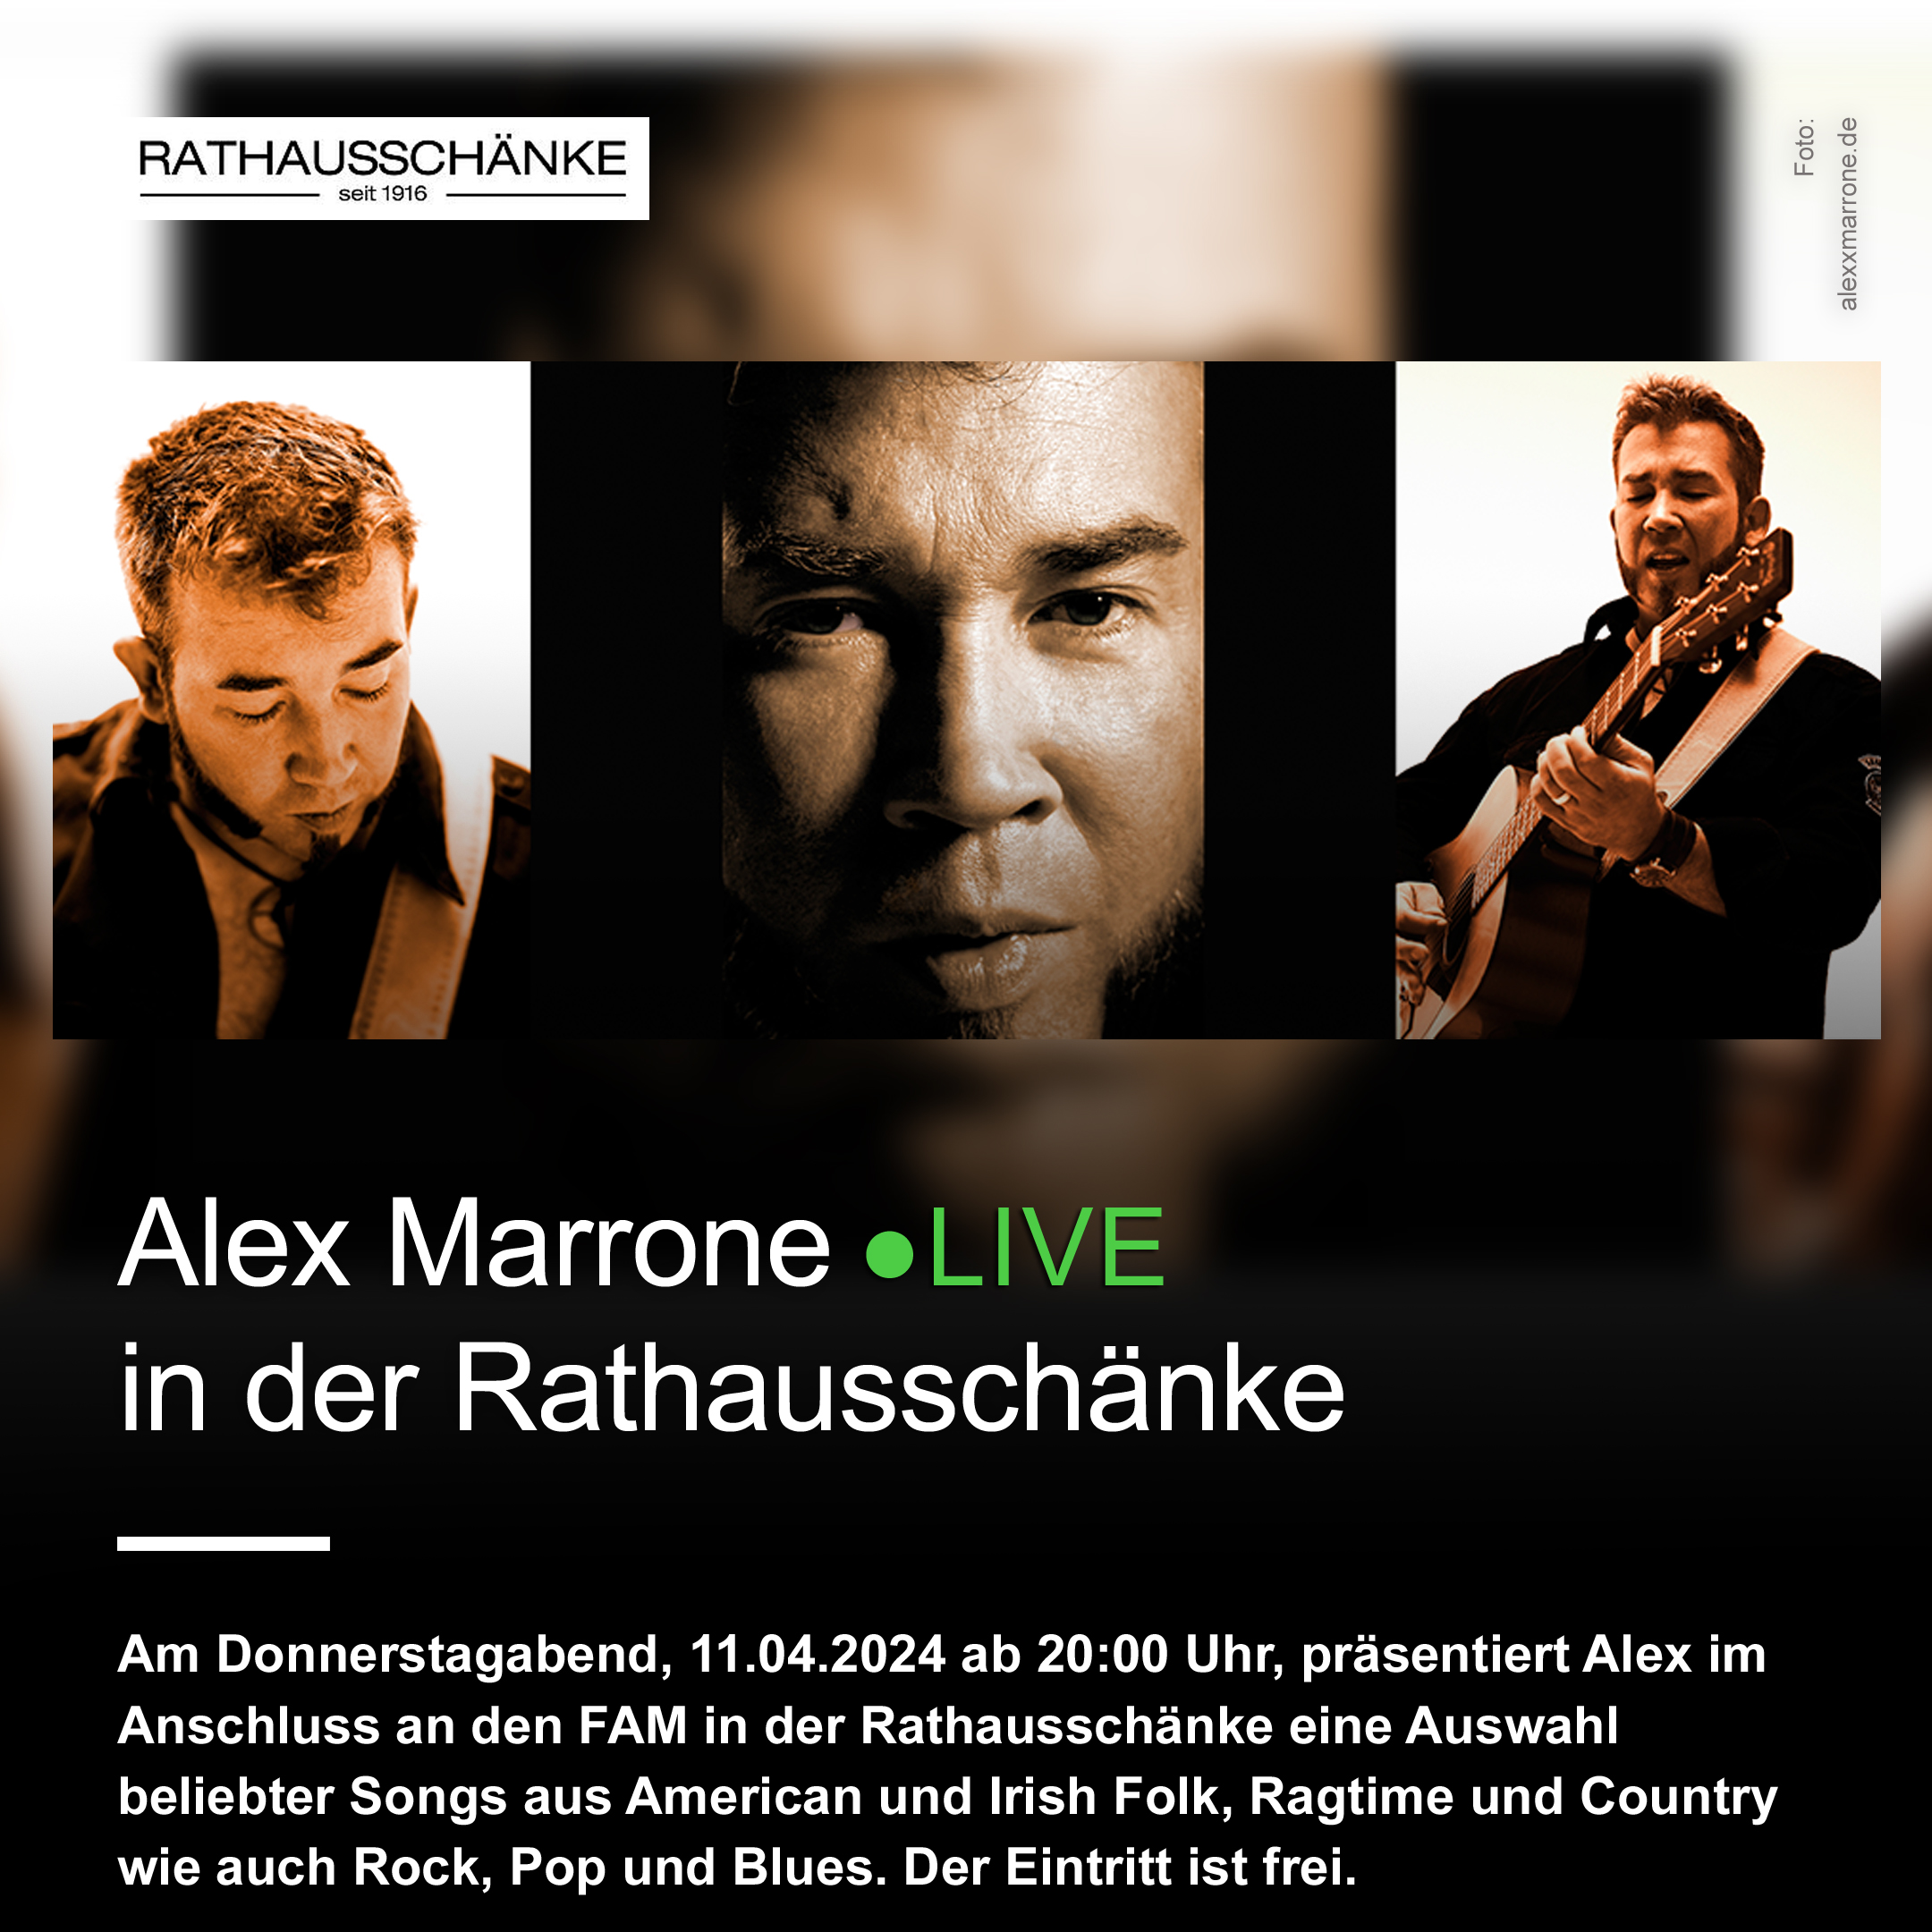 LIVE-Musik mit Alex Marrone nach dem FAM